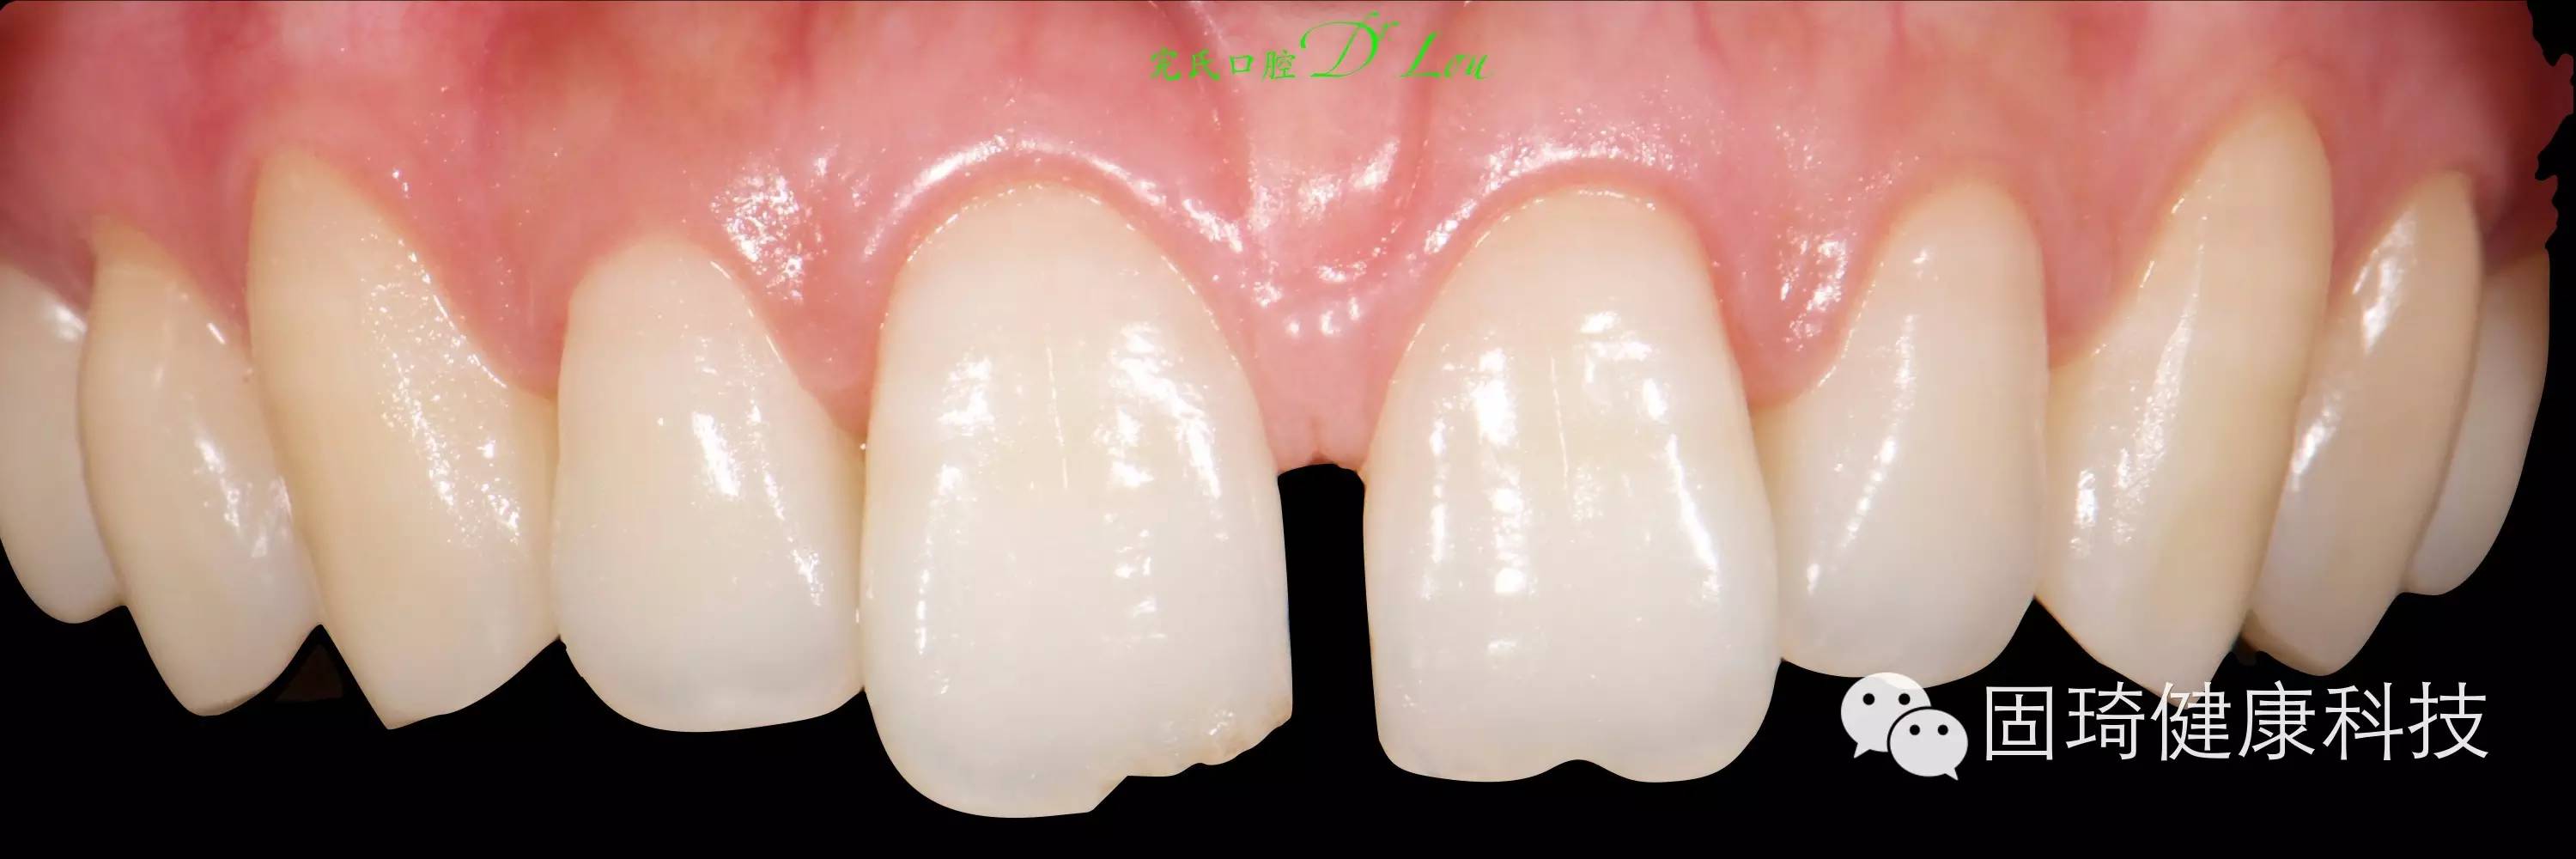 一例树脂关闭前牙间隙-王生洲的博客-KQ88口腔博客